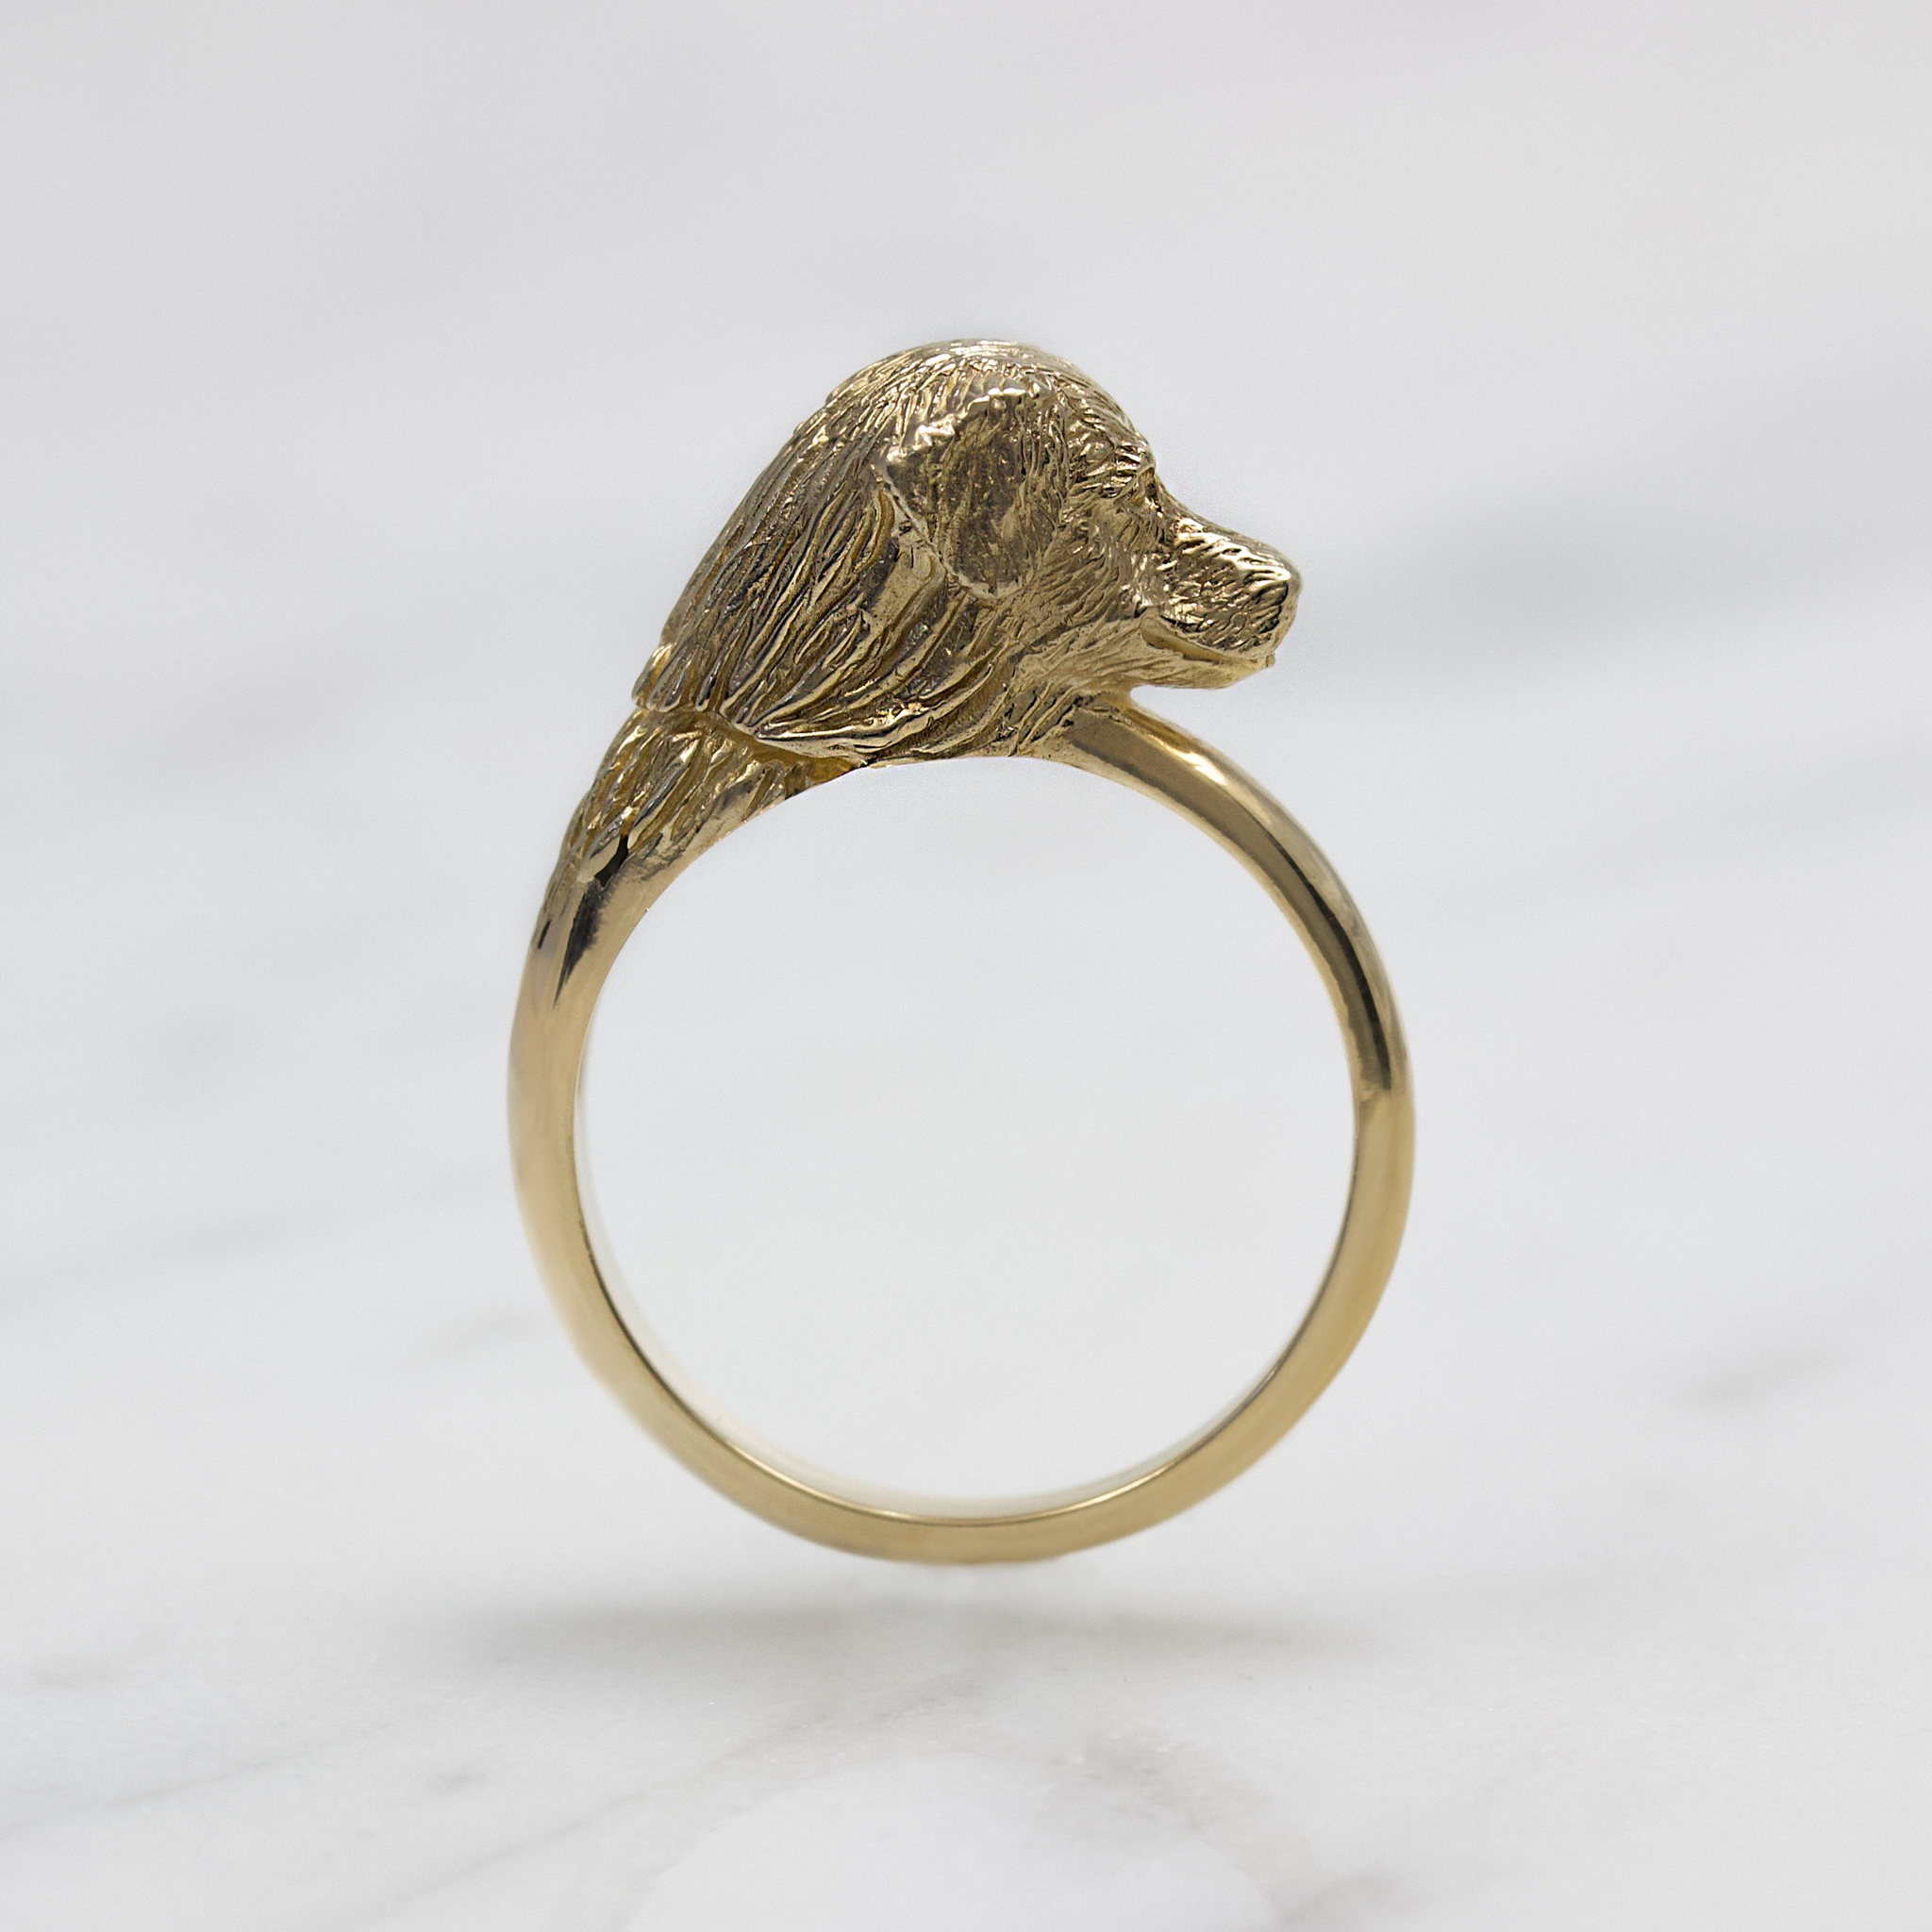 Golden Retriever Ring